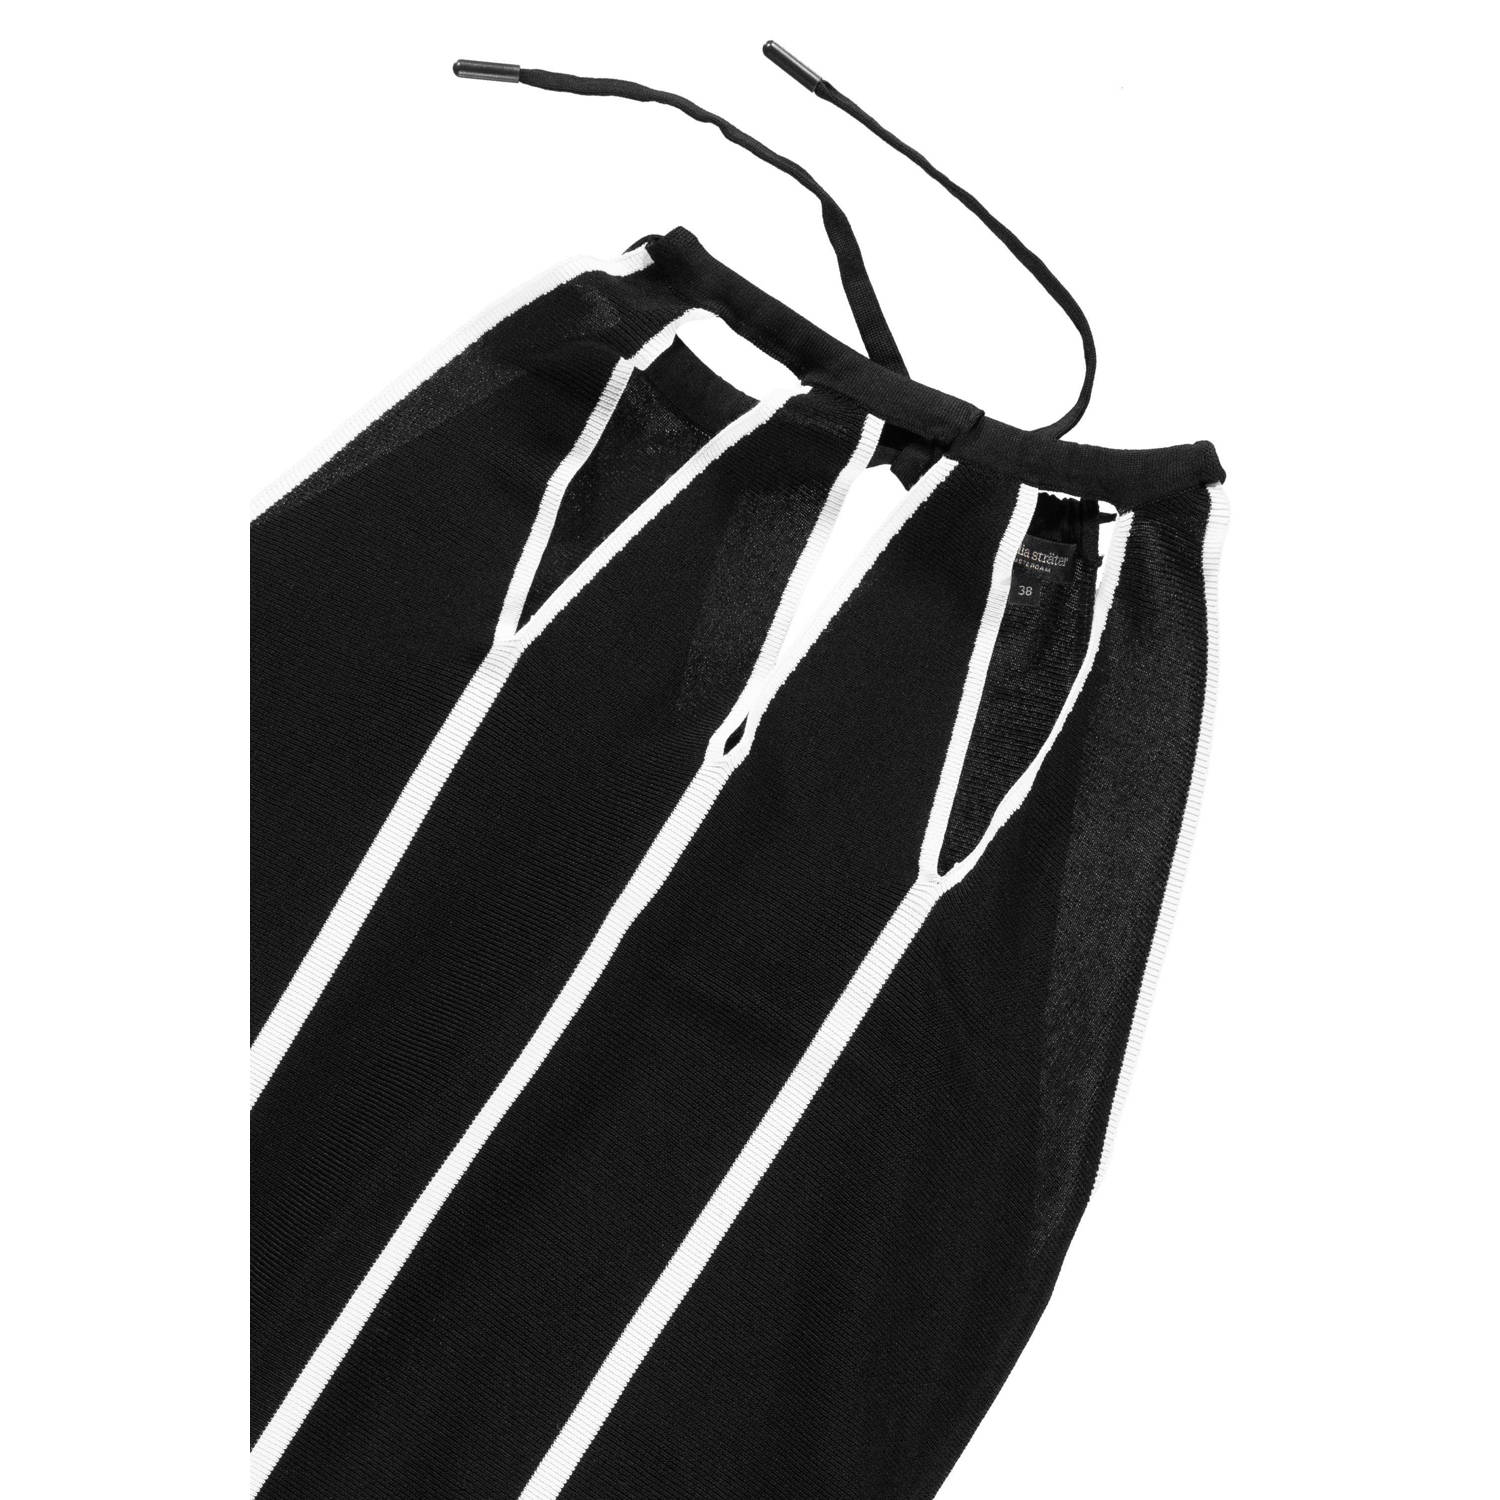 Claudia Sträter fijngebreide halter jurk met contrastbies en contrastbies zwart wit